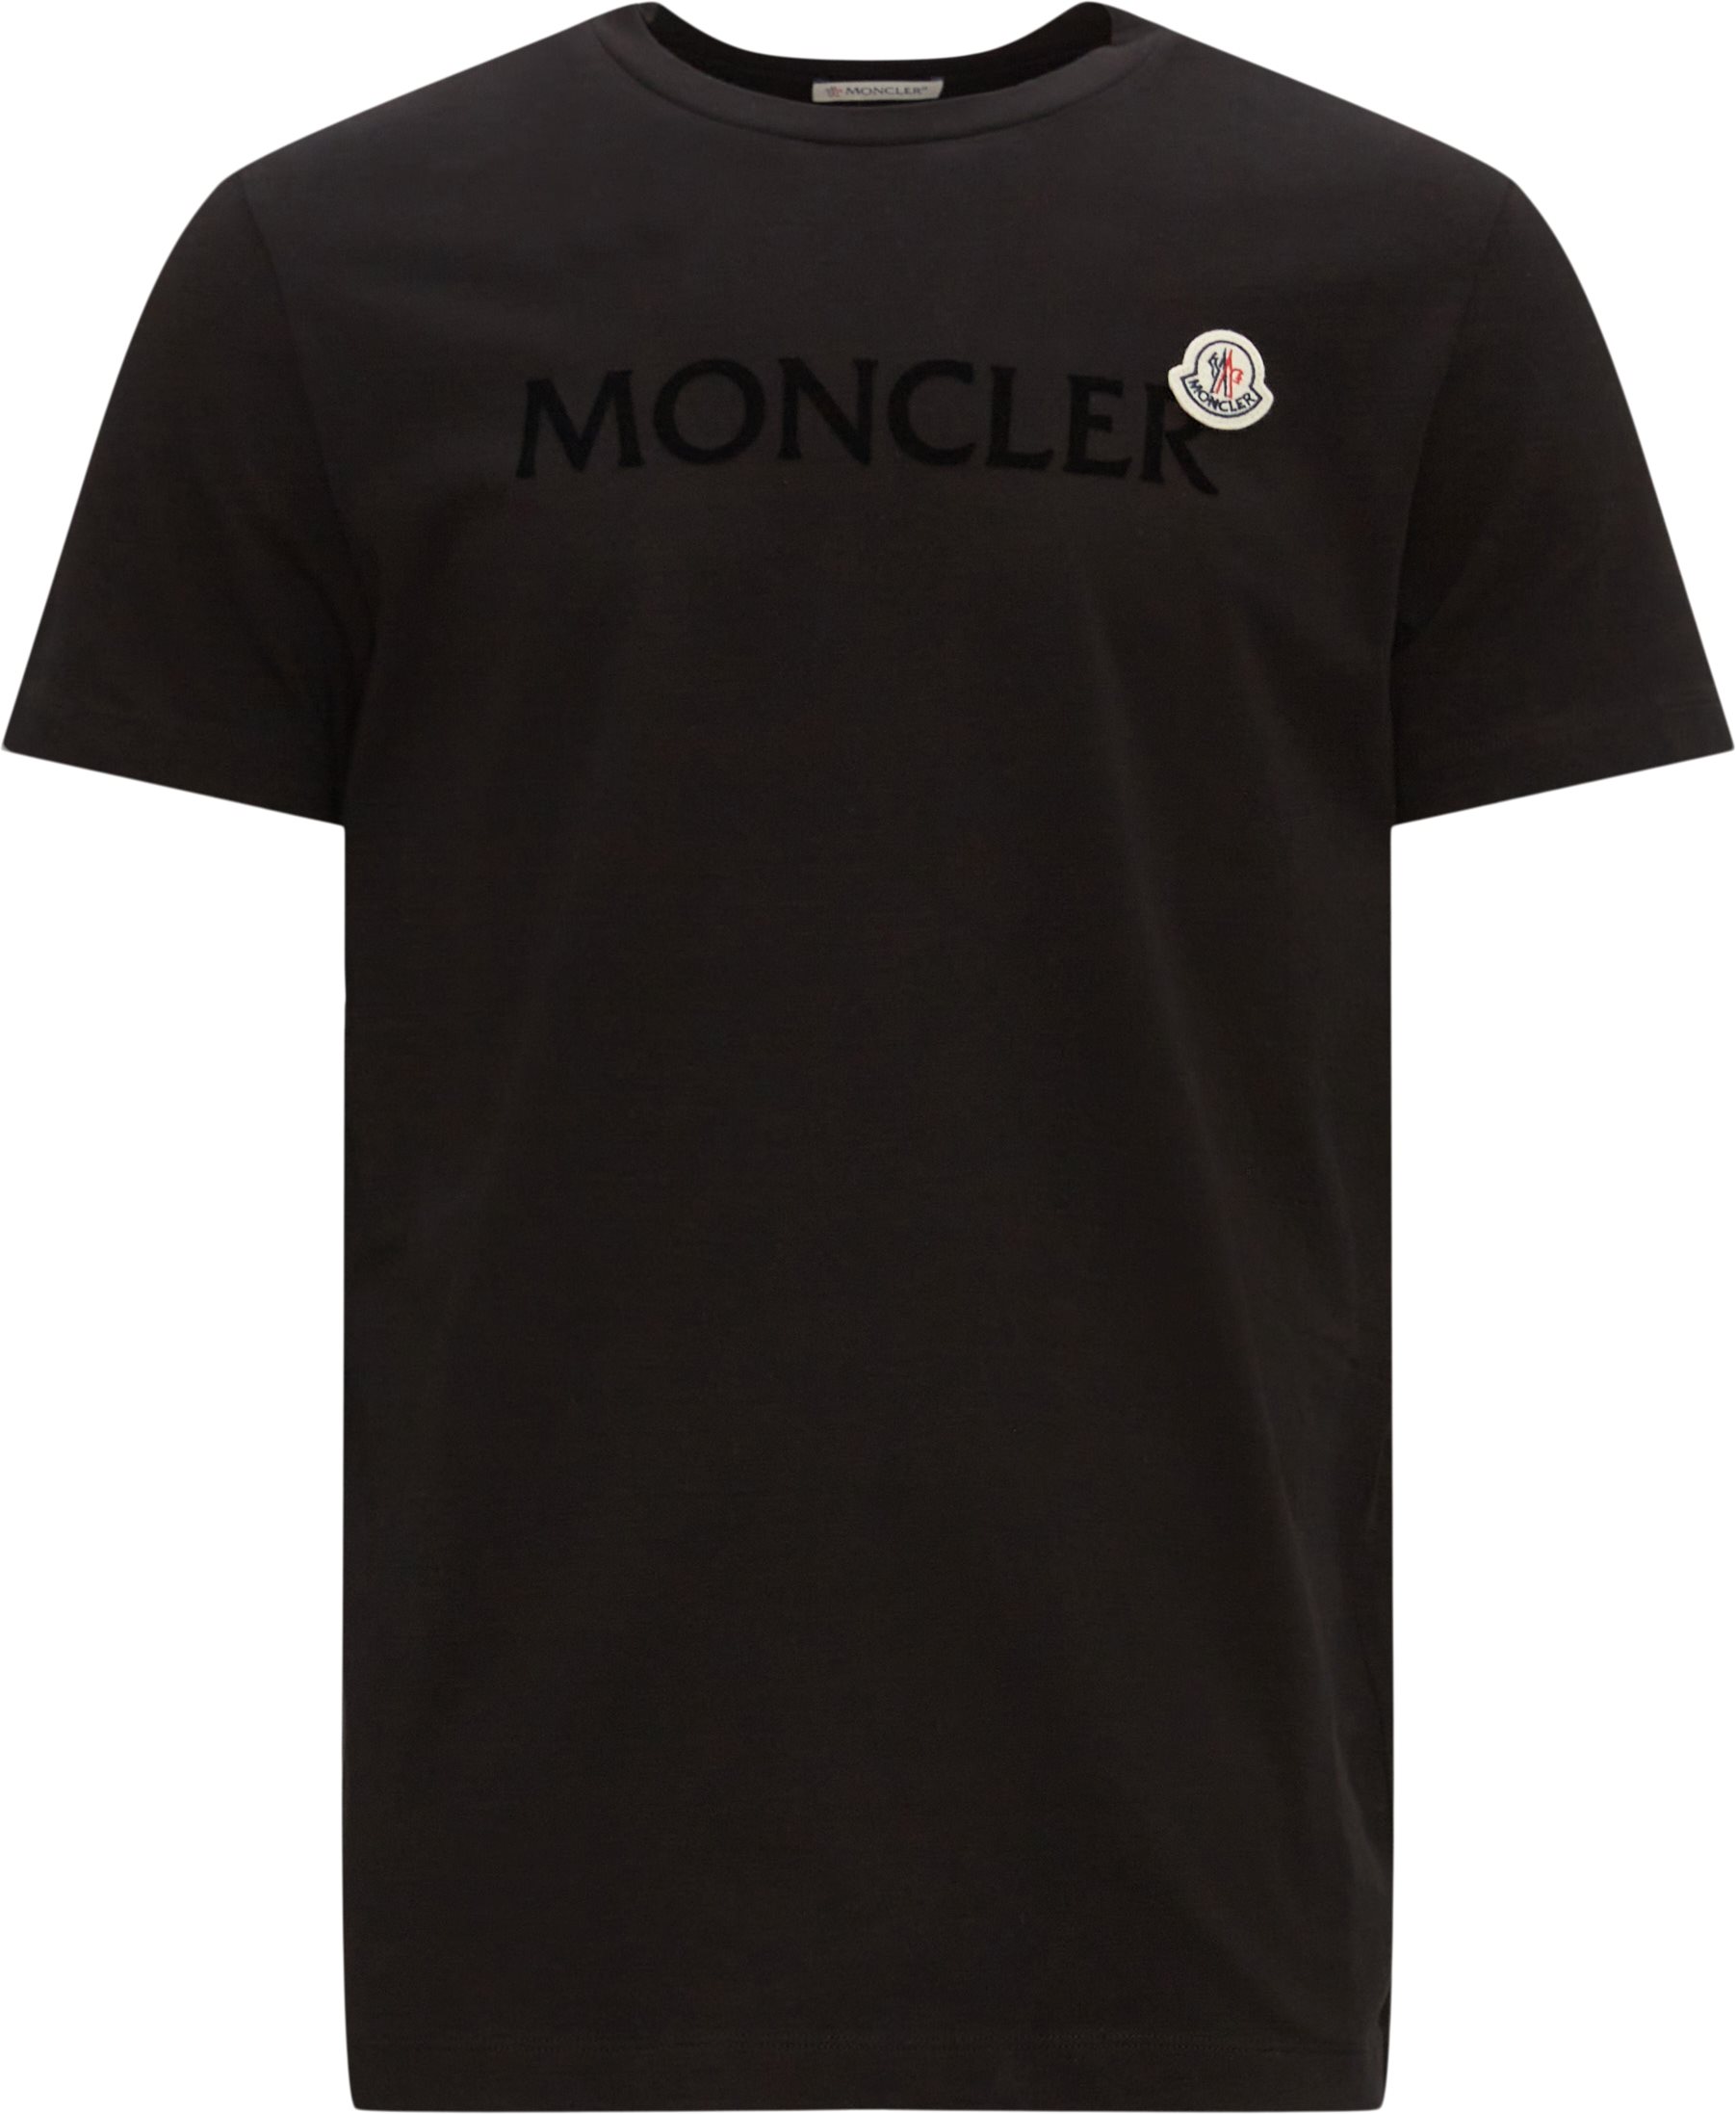 Moncler T-shirts 8C00064 8390T Black